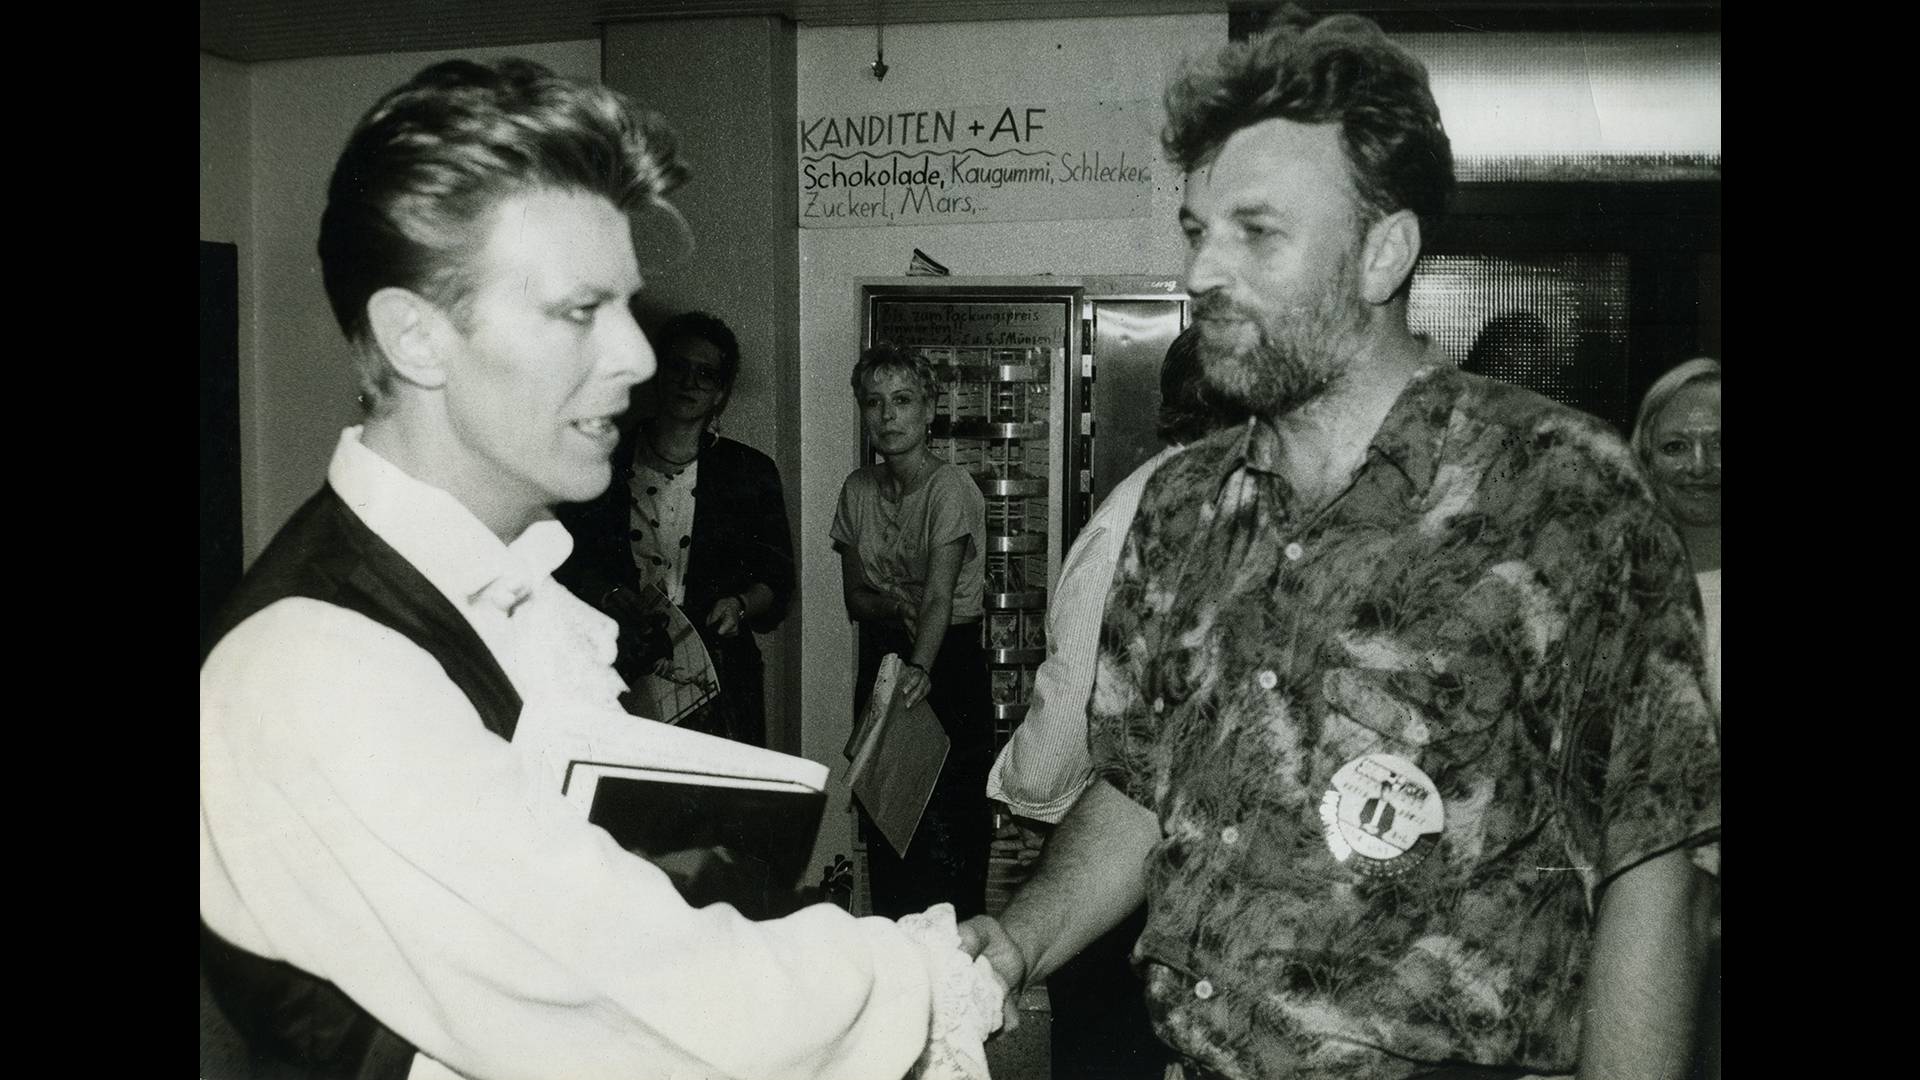 Ljude je zanimalo što Bowie pije i orgija li. Prije intervjua rekao mi je: Ante, imaš odlično odijelo